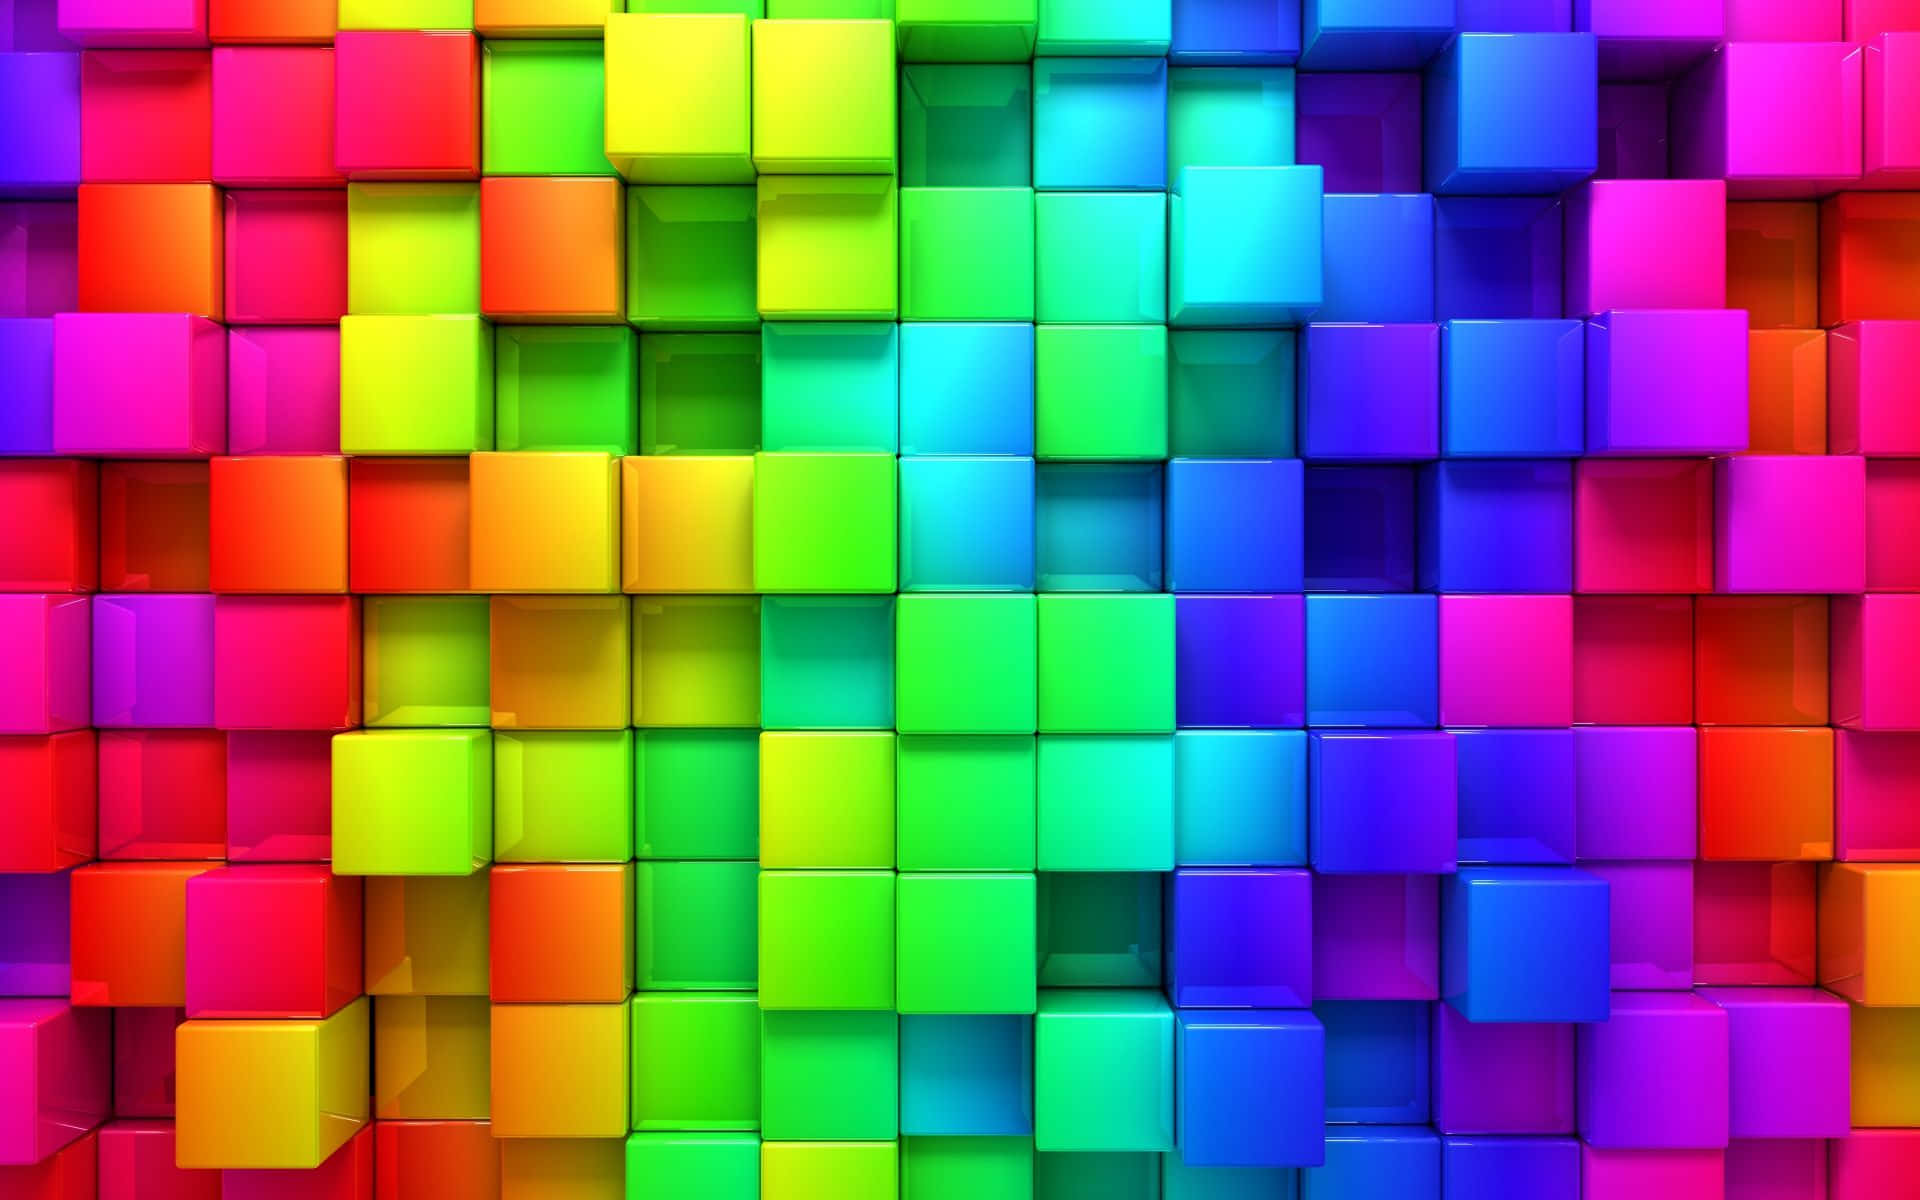 Coolfärgglad Regnbåge Tredimensionell Kub. Wallpaper